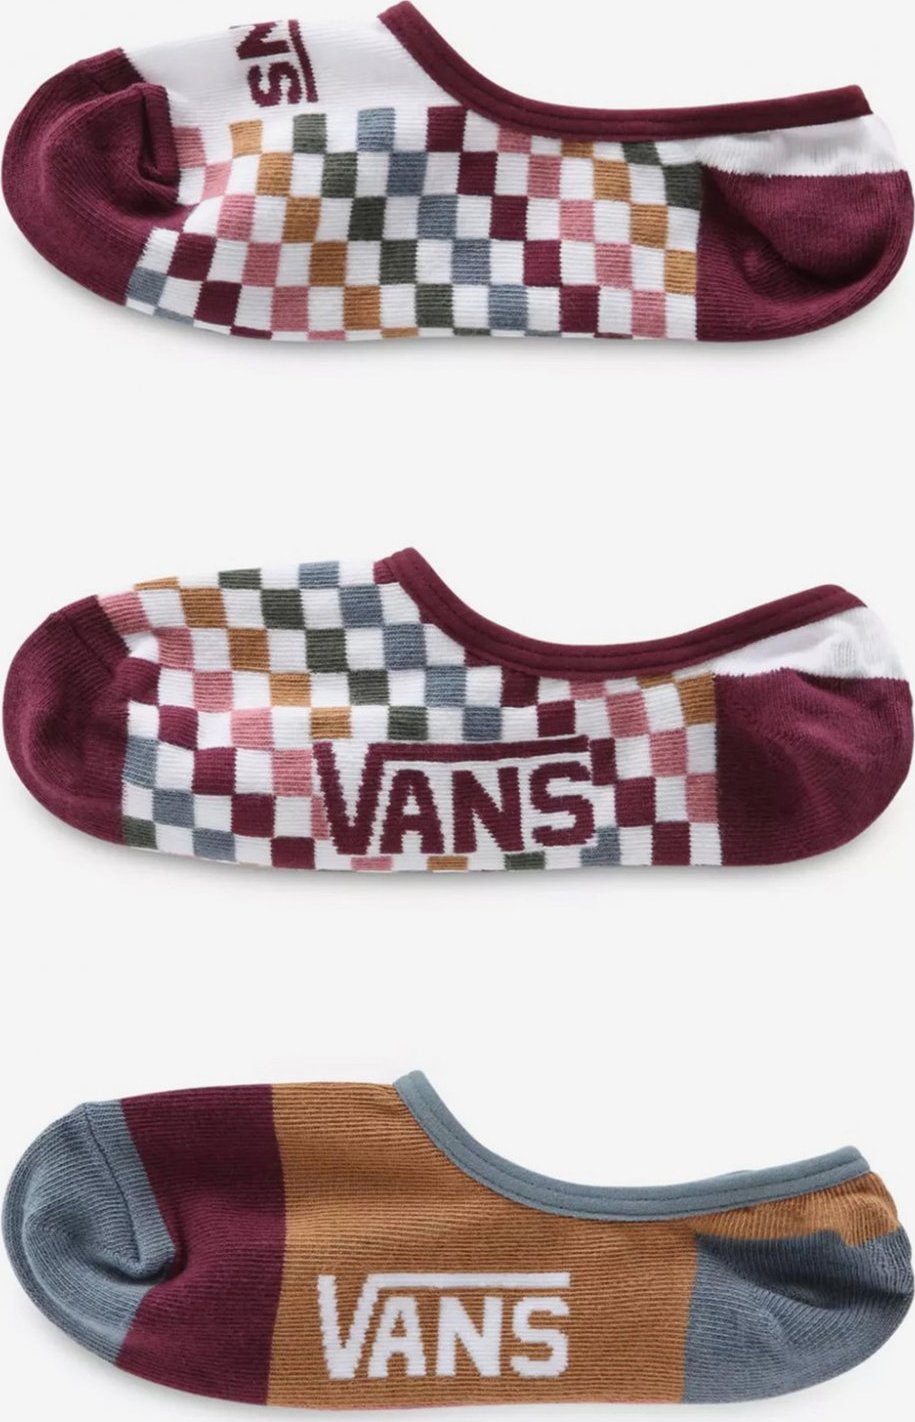 Ponožky 3 páry Vans Vans